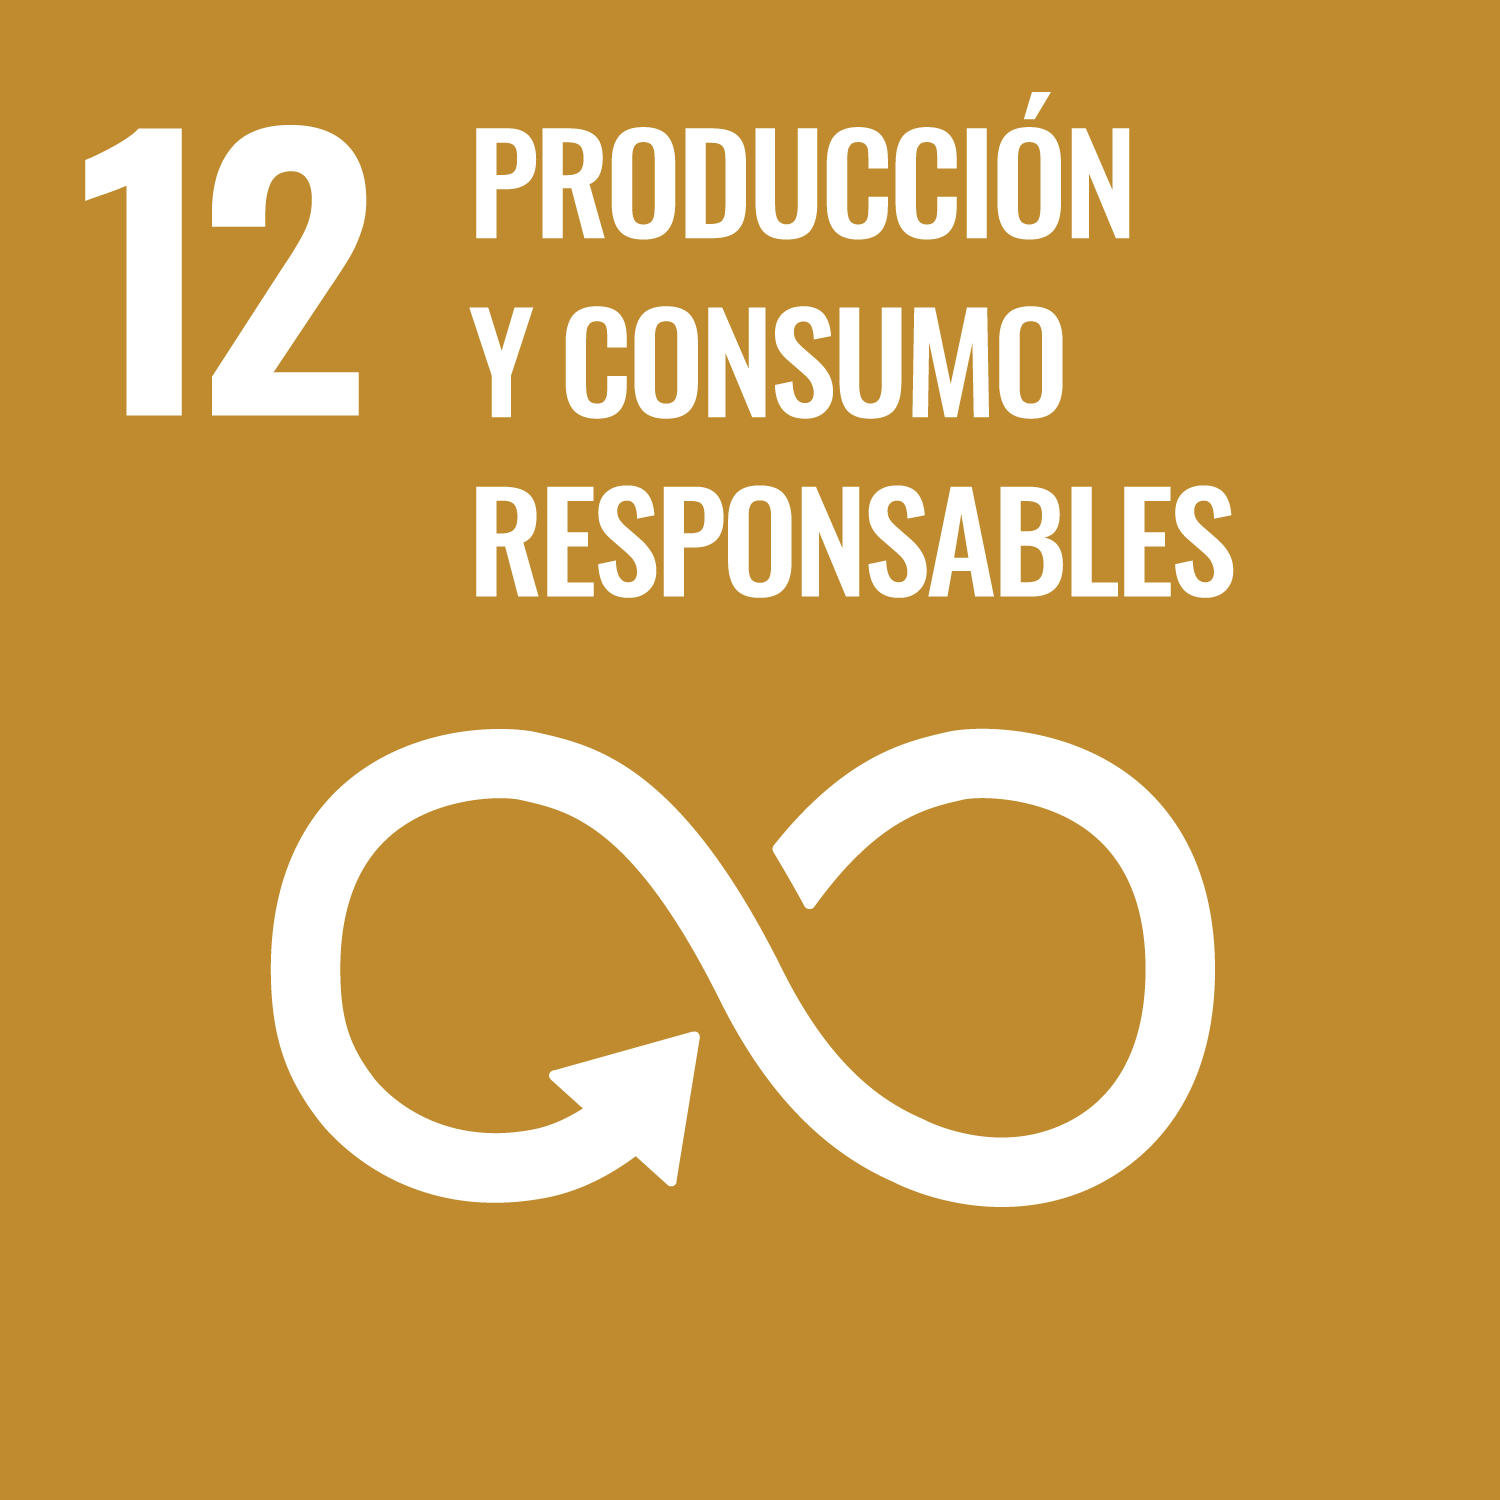 12 Producción y consumo responsable